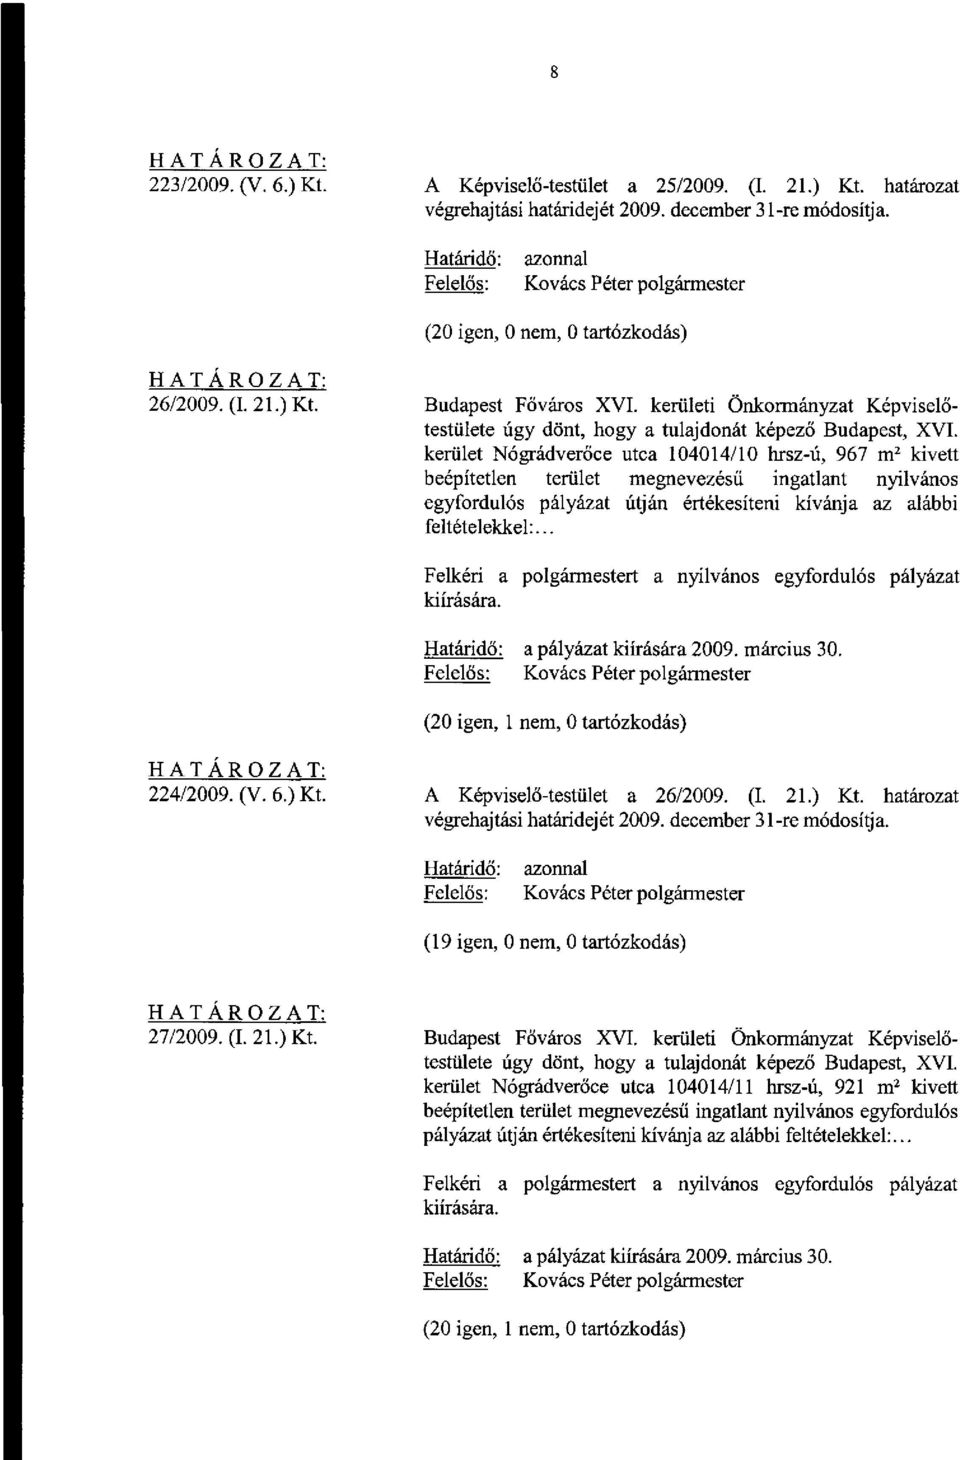 az alábbi feltételekkel:... a pályázat kiírására 2009. március 30. 224/2009. (V. 6.) Kt. A Képviselő-testület a 26/2009. (I. 21.) Kt. határozat (19 igen, 0 nem, 0 tartózkodás) 27/2009. (I. 21.) Kt. Budapest Főváros XVI.